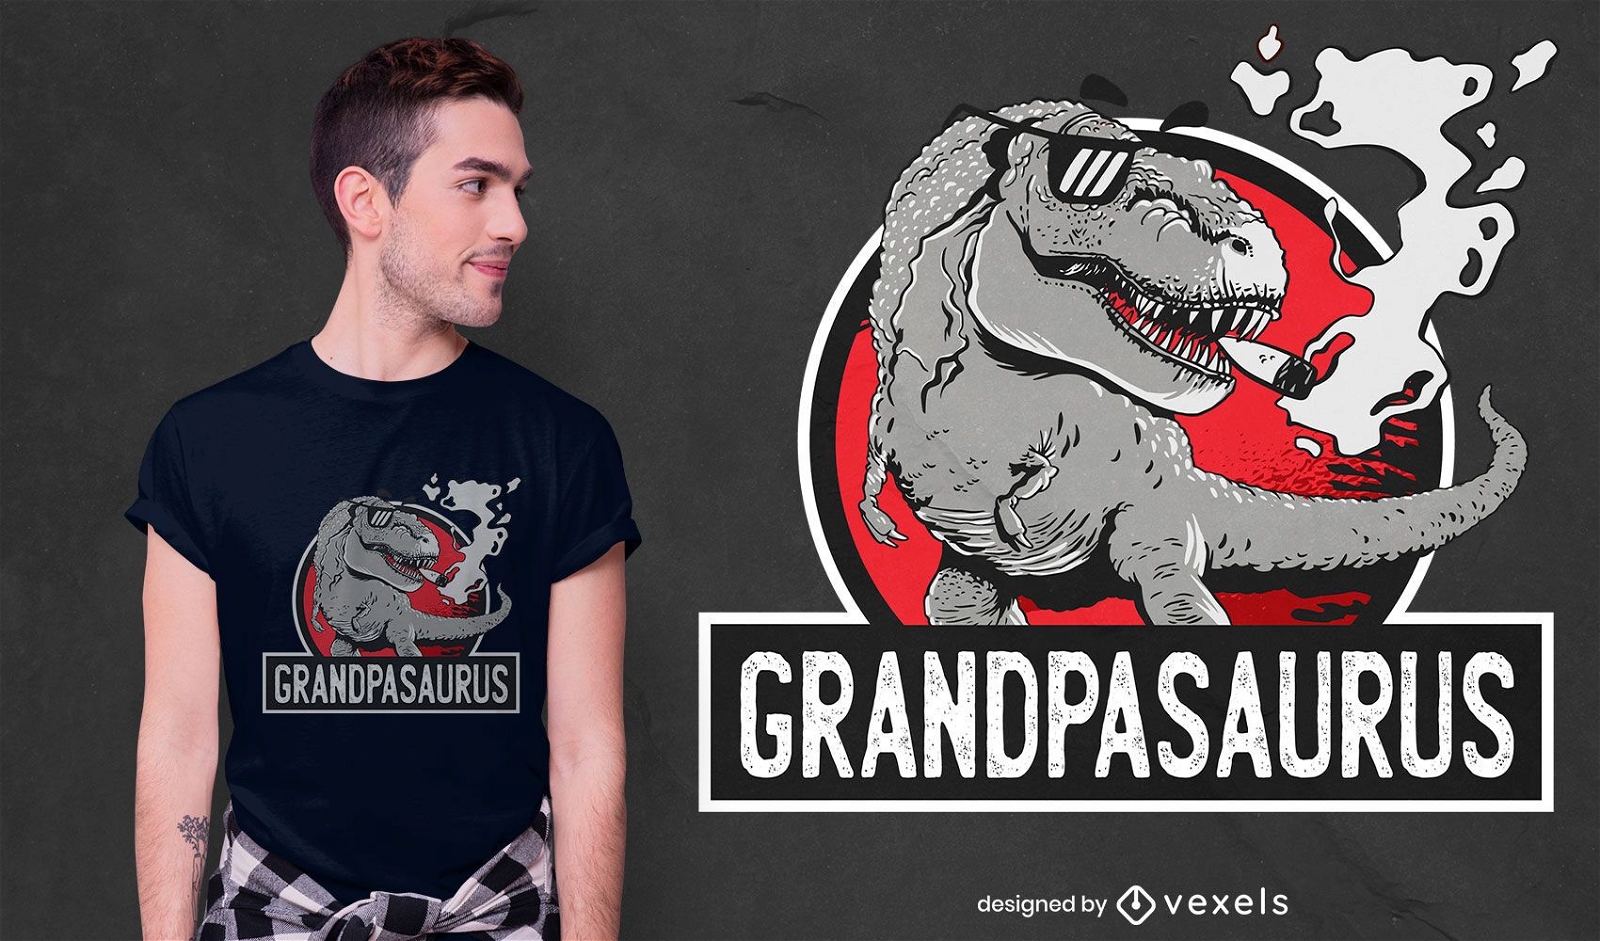 Grandfather t-rex dinosaur t-shirt design